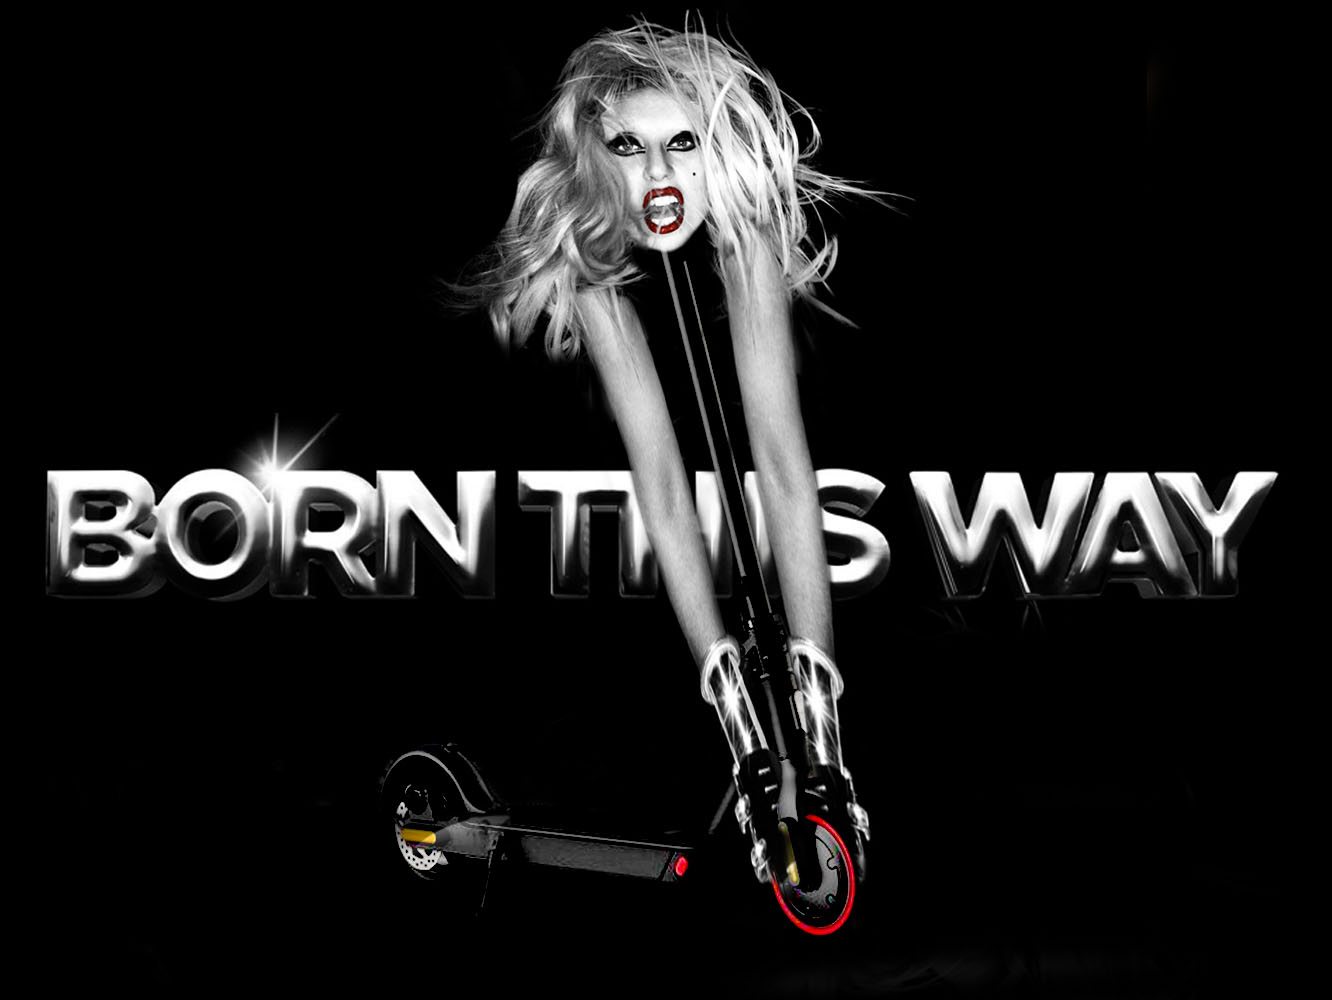  Las seis revisiones del ‘Born This Way’ de Lady Gaga, ordenadas de peor a mejor